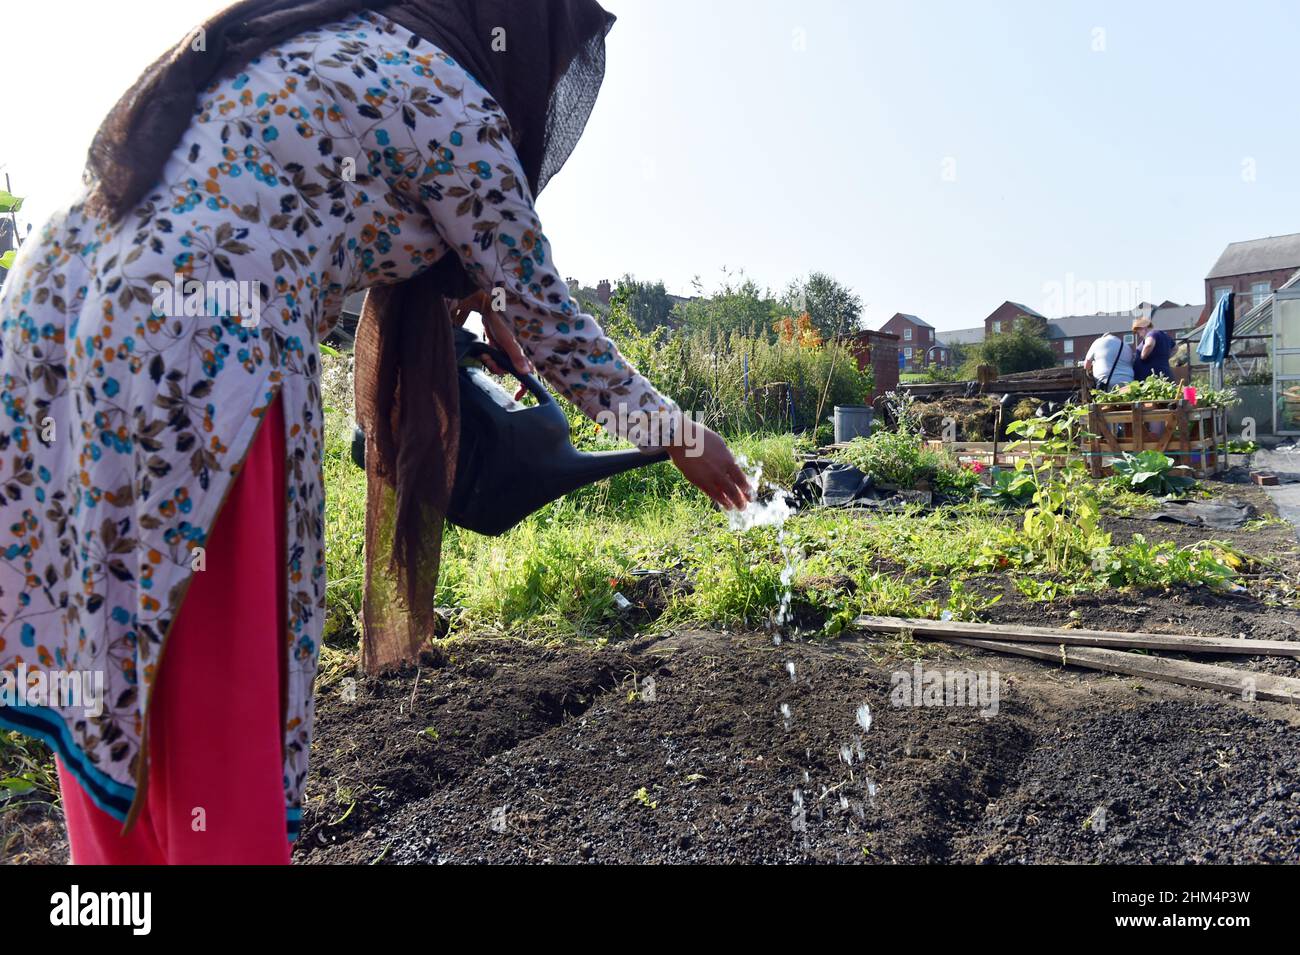 Una mujer joven siembra semillas en una asignación comunitaria, Leeds, Reino Unido Foto de stock